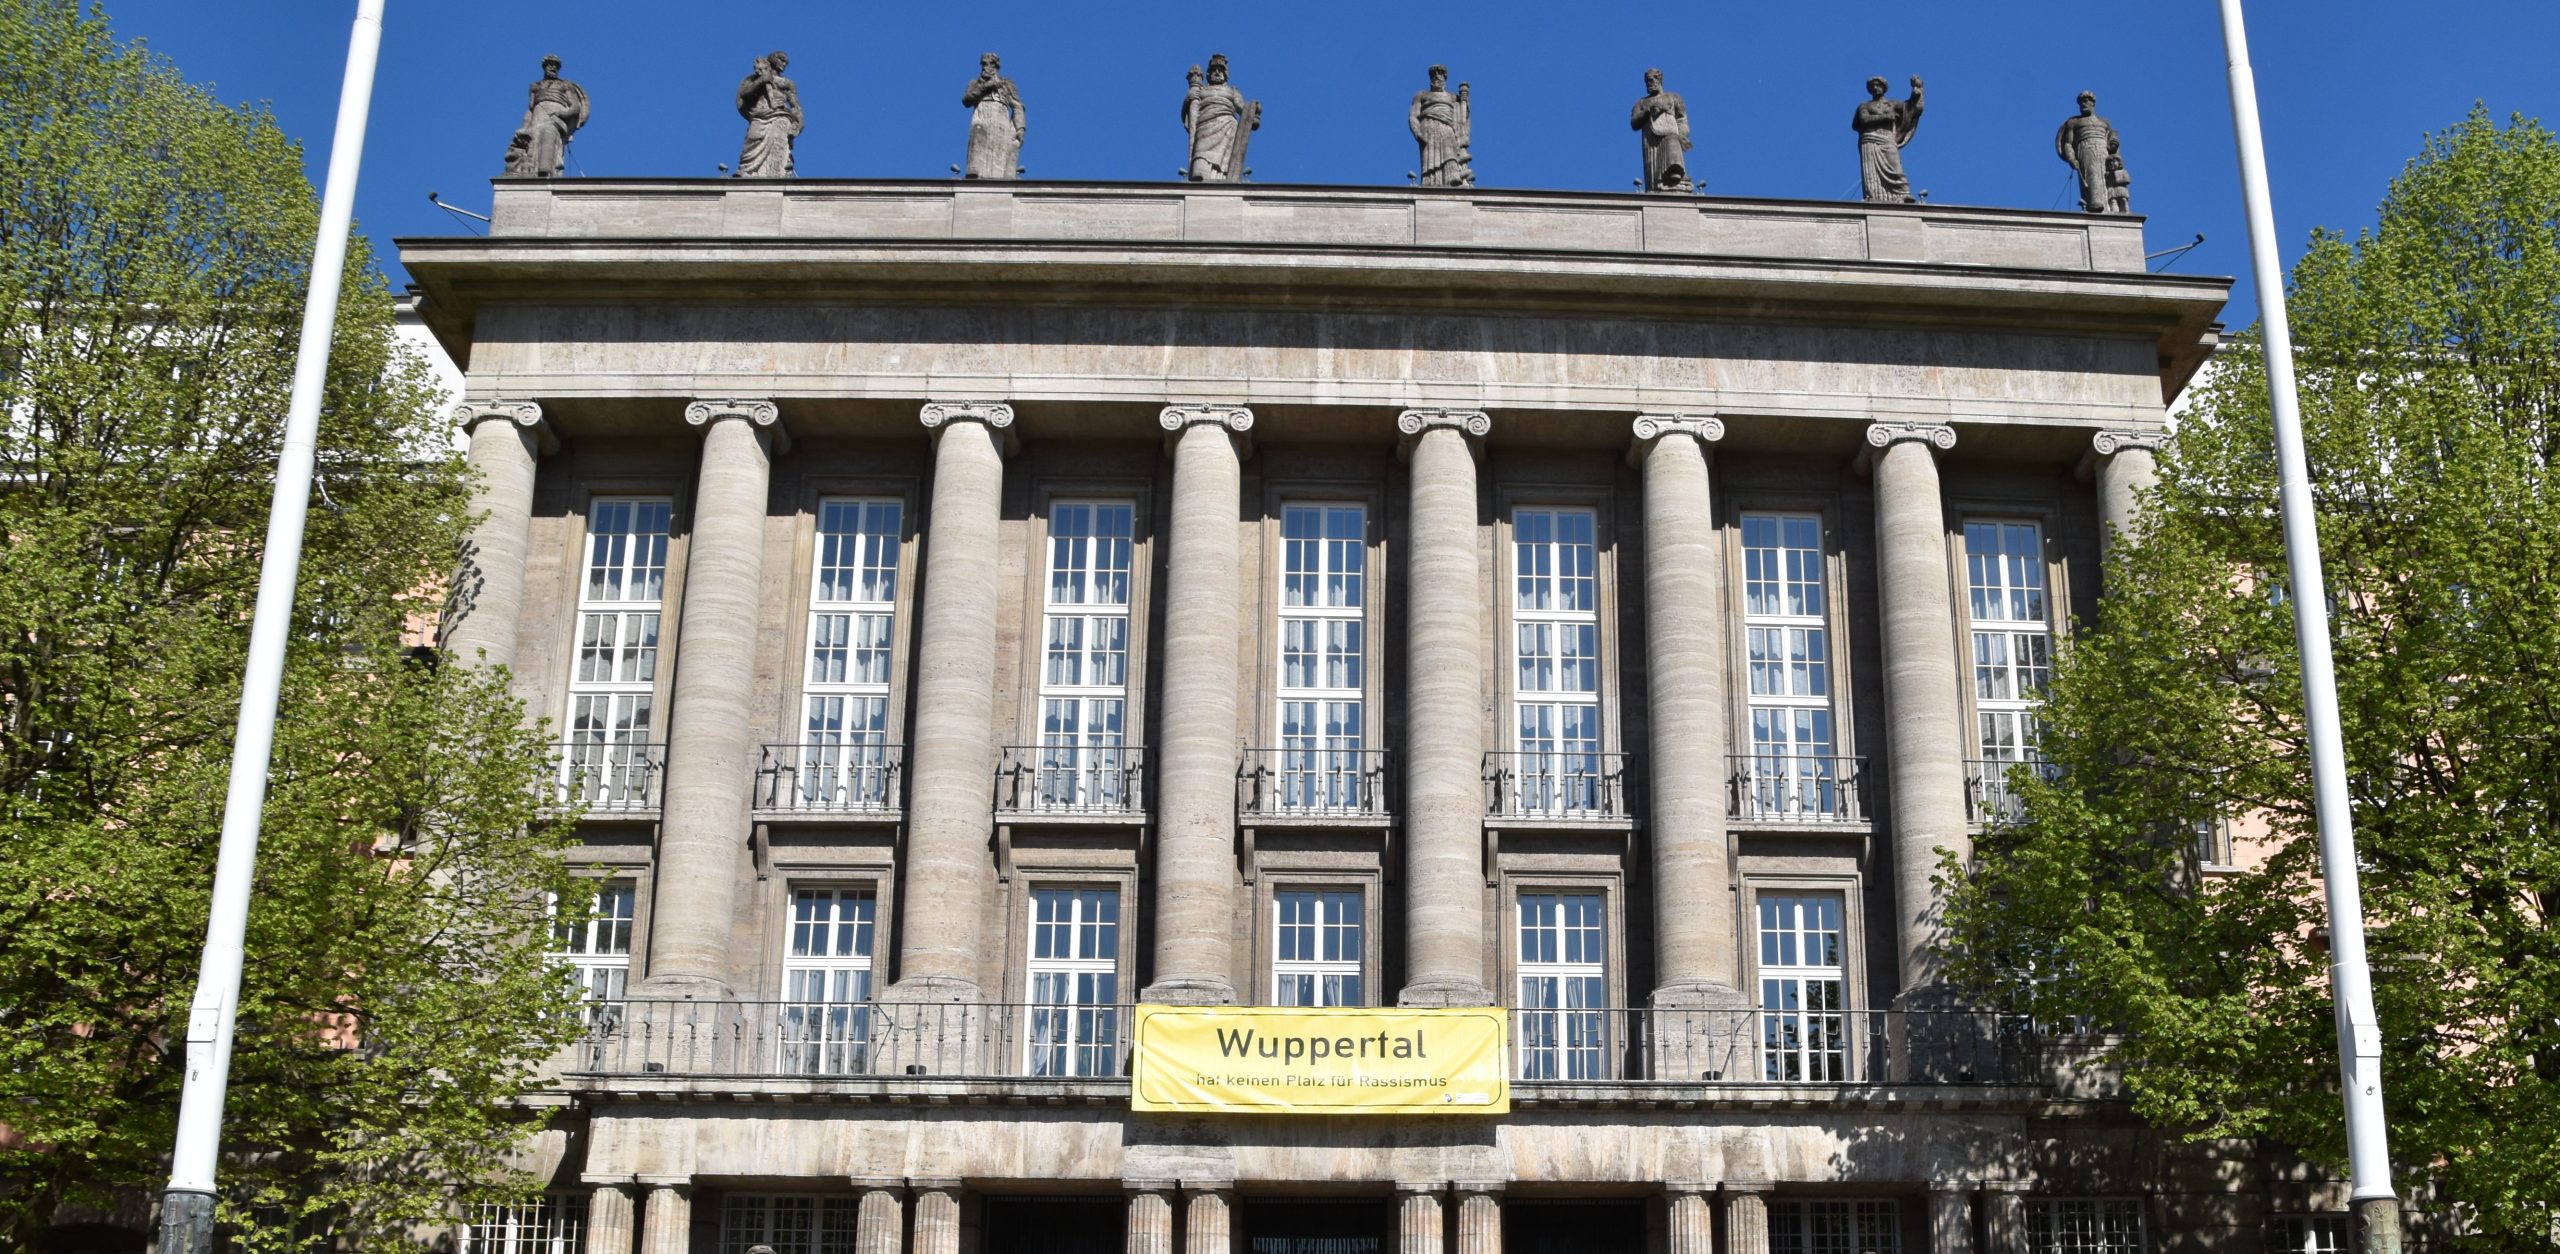 Bild von der Front des Rathauses in Wuppertal Barmen. Daran hängt ein Banner im Stil eines Ortseingangsschildes mit der Aufschrift "Wuppertal hat keinen Platz für Rassismus"